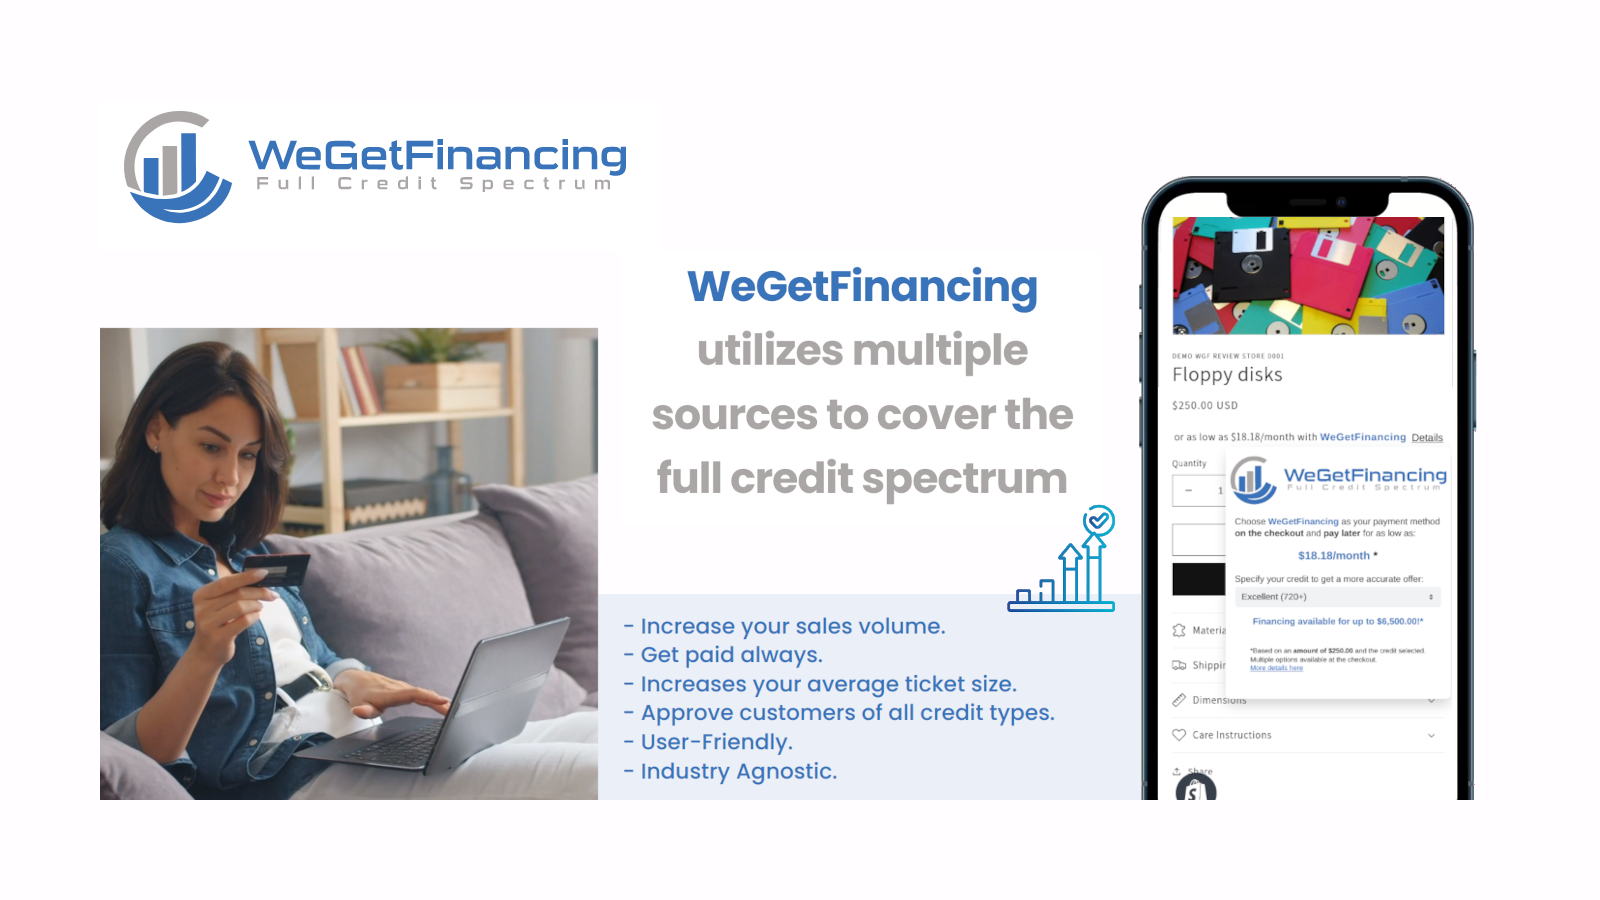 通过提供WeGetFinancing来增加您的销售量。